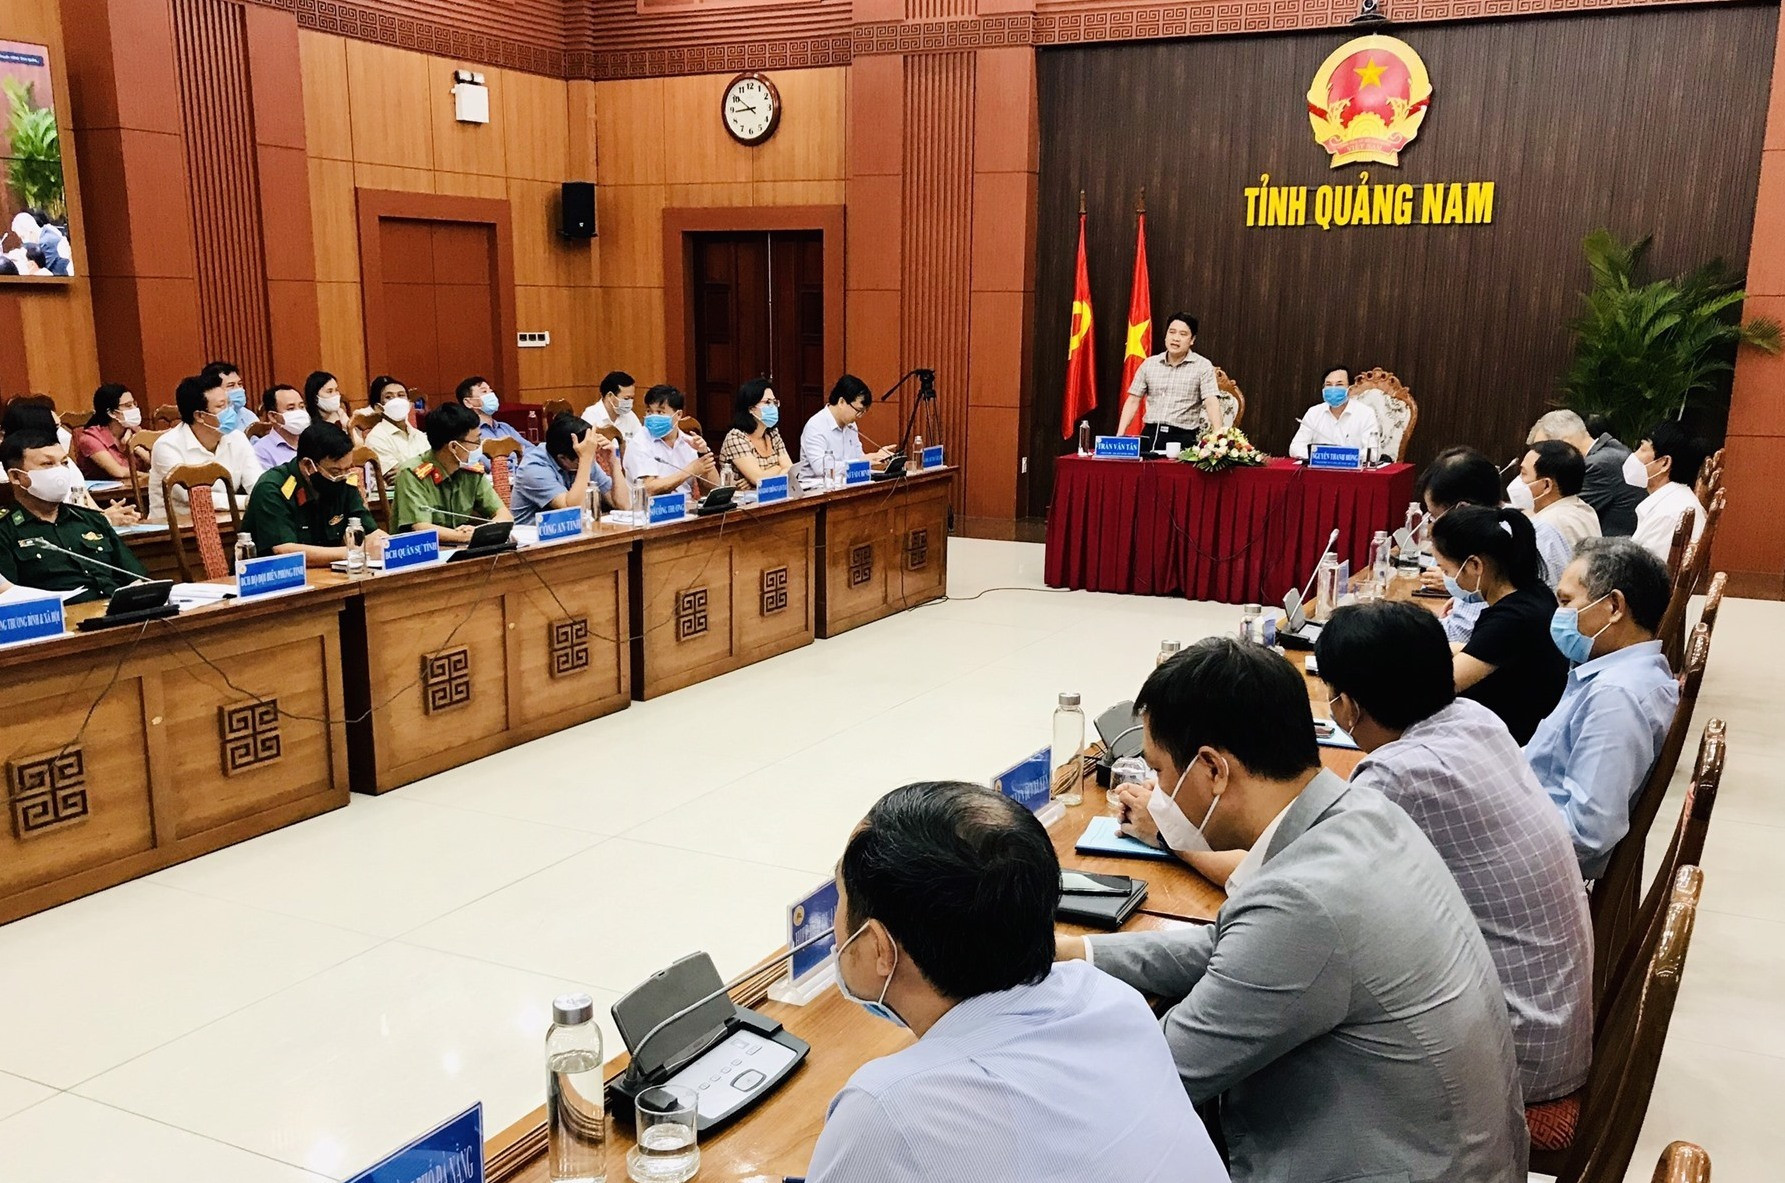 Phó Chủ tịch UBND tỉnh Trần Văn Tân chủ trì hội nghị ở điểm cầu Quảng Nam. Ảnh: Q.T